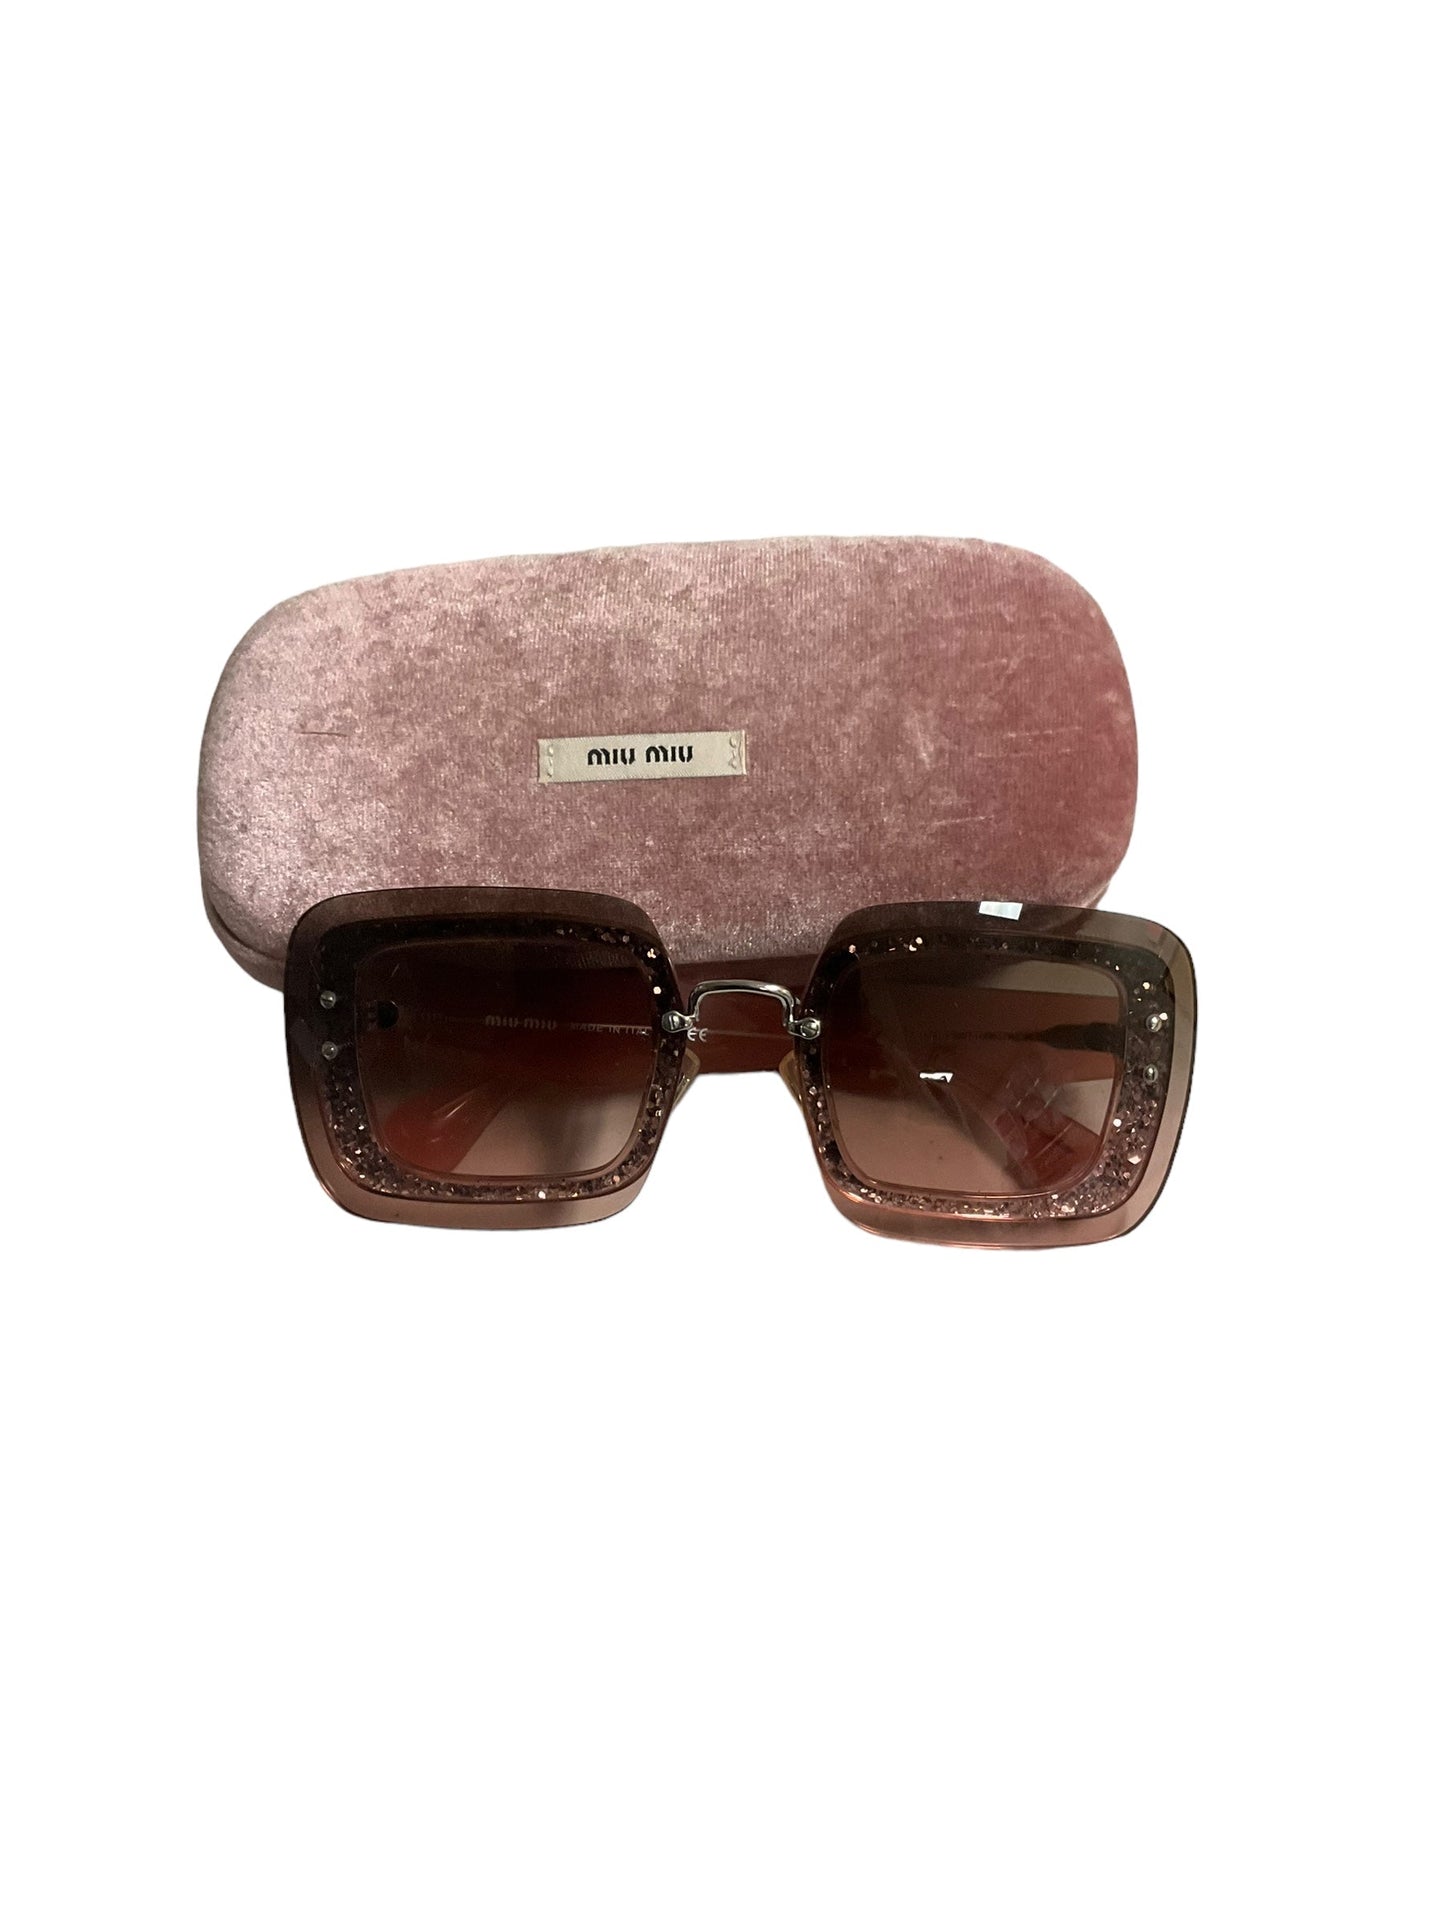 Sunglasses Luxury Designer Miu Miu